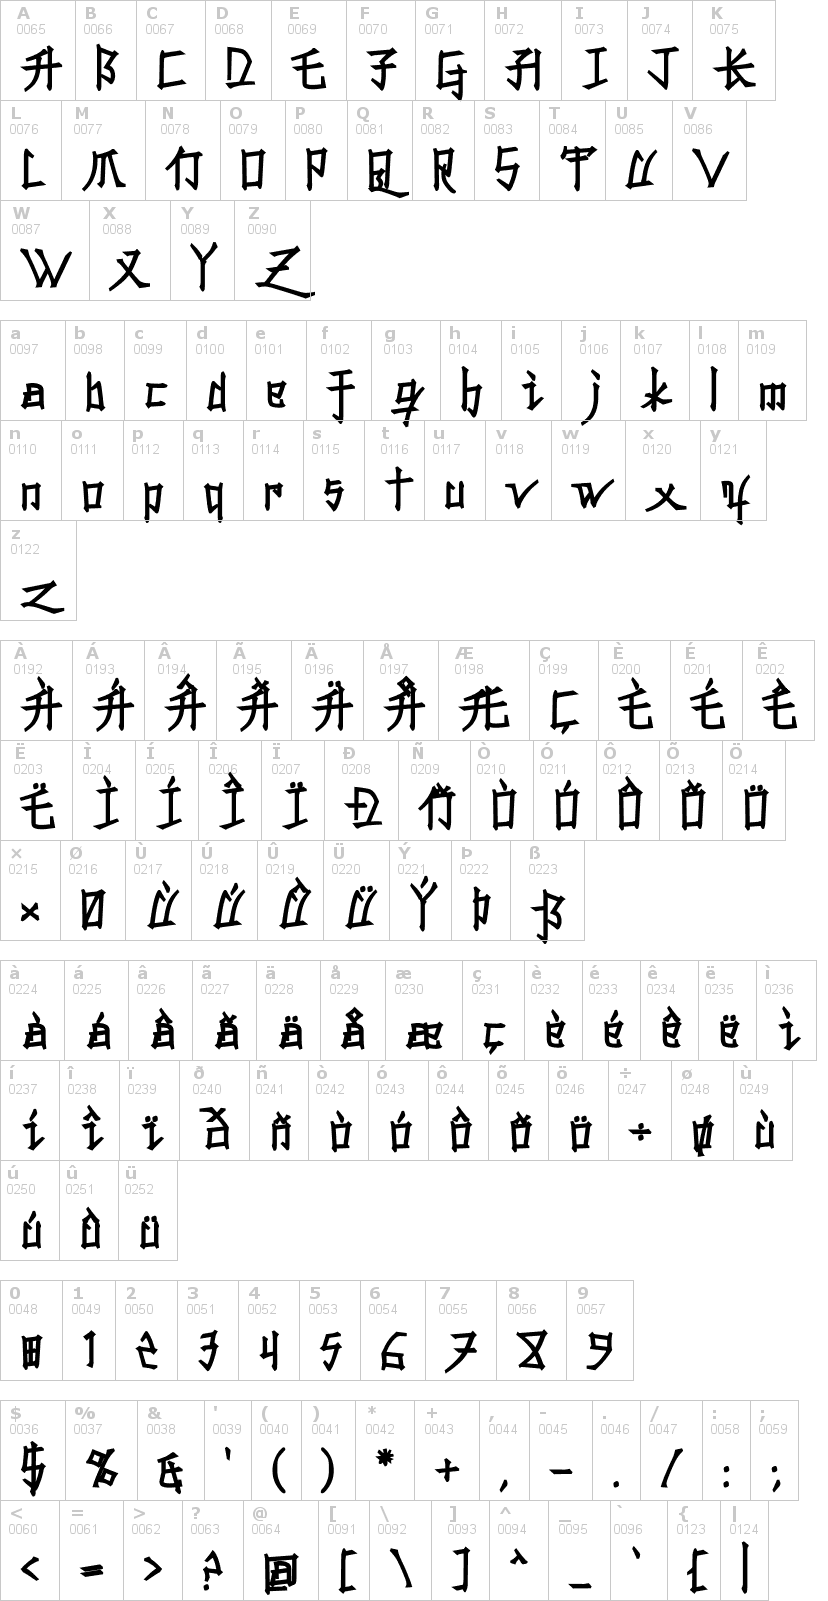 Lettere dell'alfabeto del font konfuciuz con le quali è possibile realizzare adesivi prespaziati